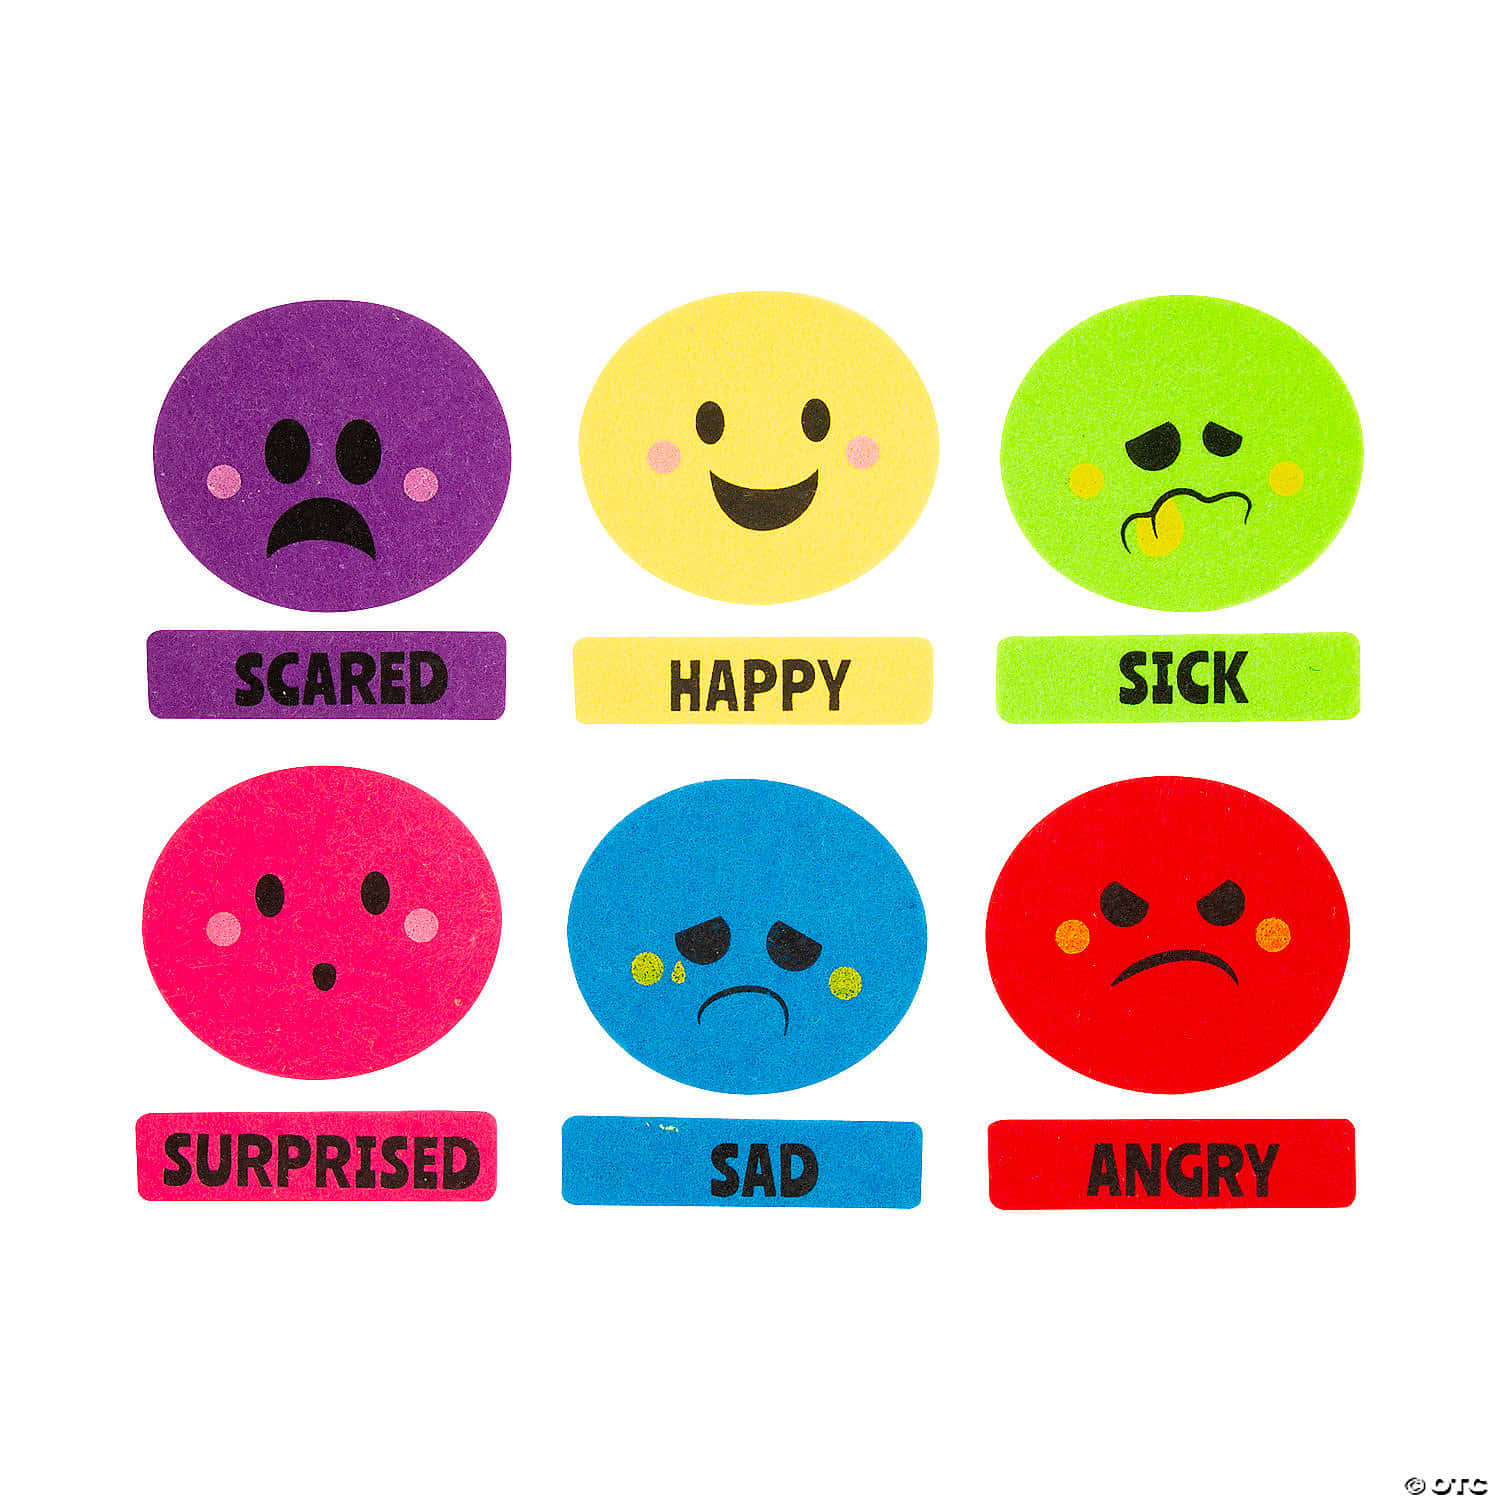 Einesammlung Von Bunten Emojis Mit Den Wörtern Traurig, Verängstigt Und Verärgert.